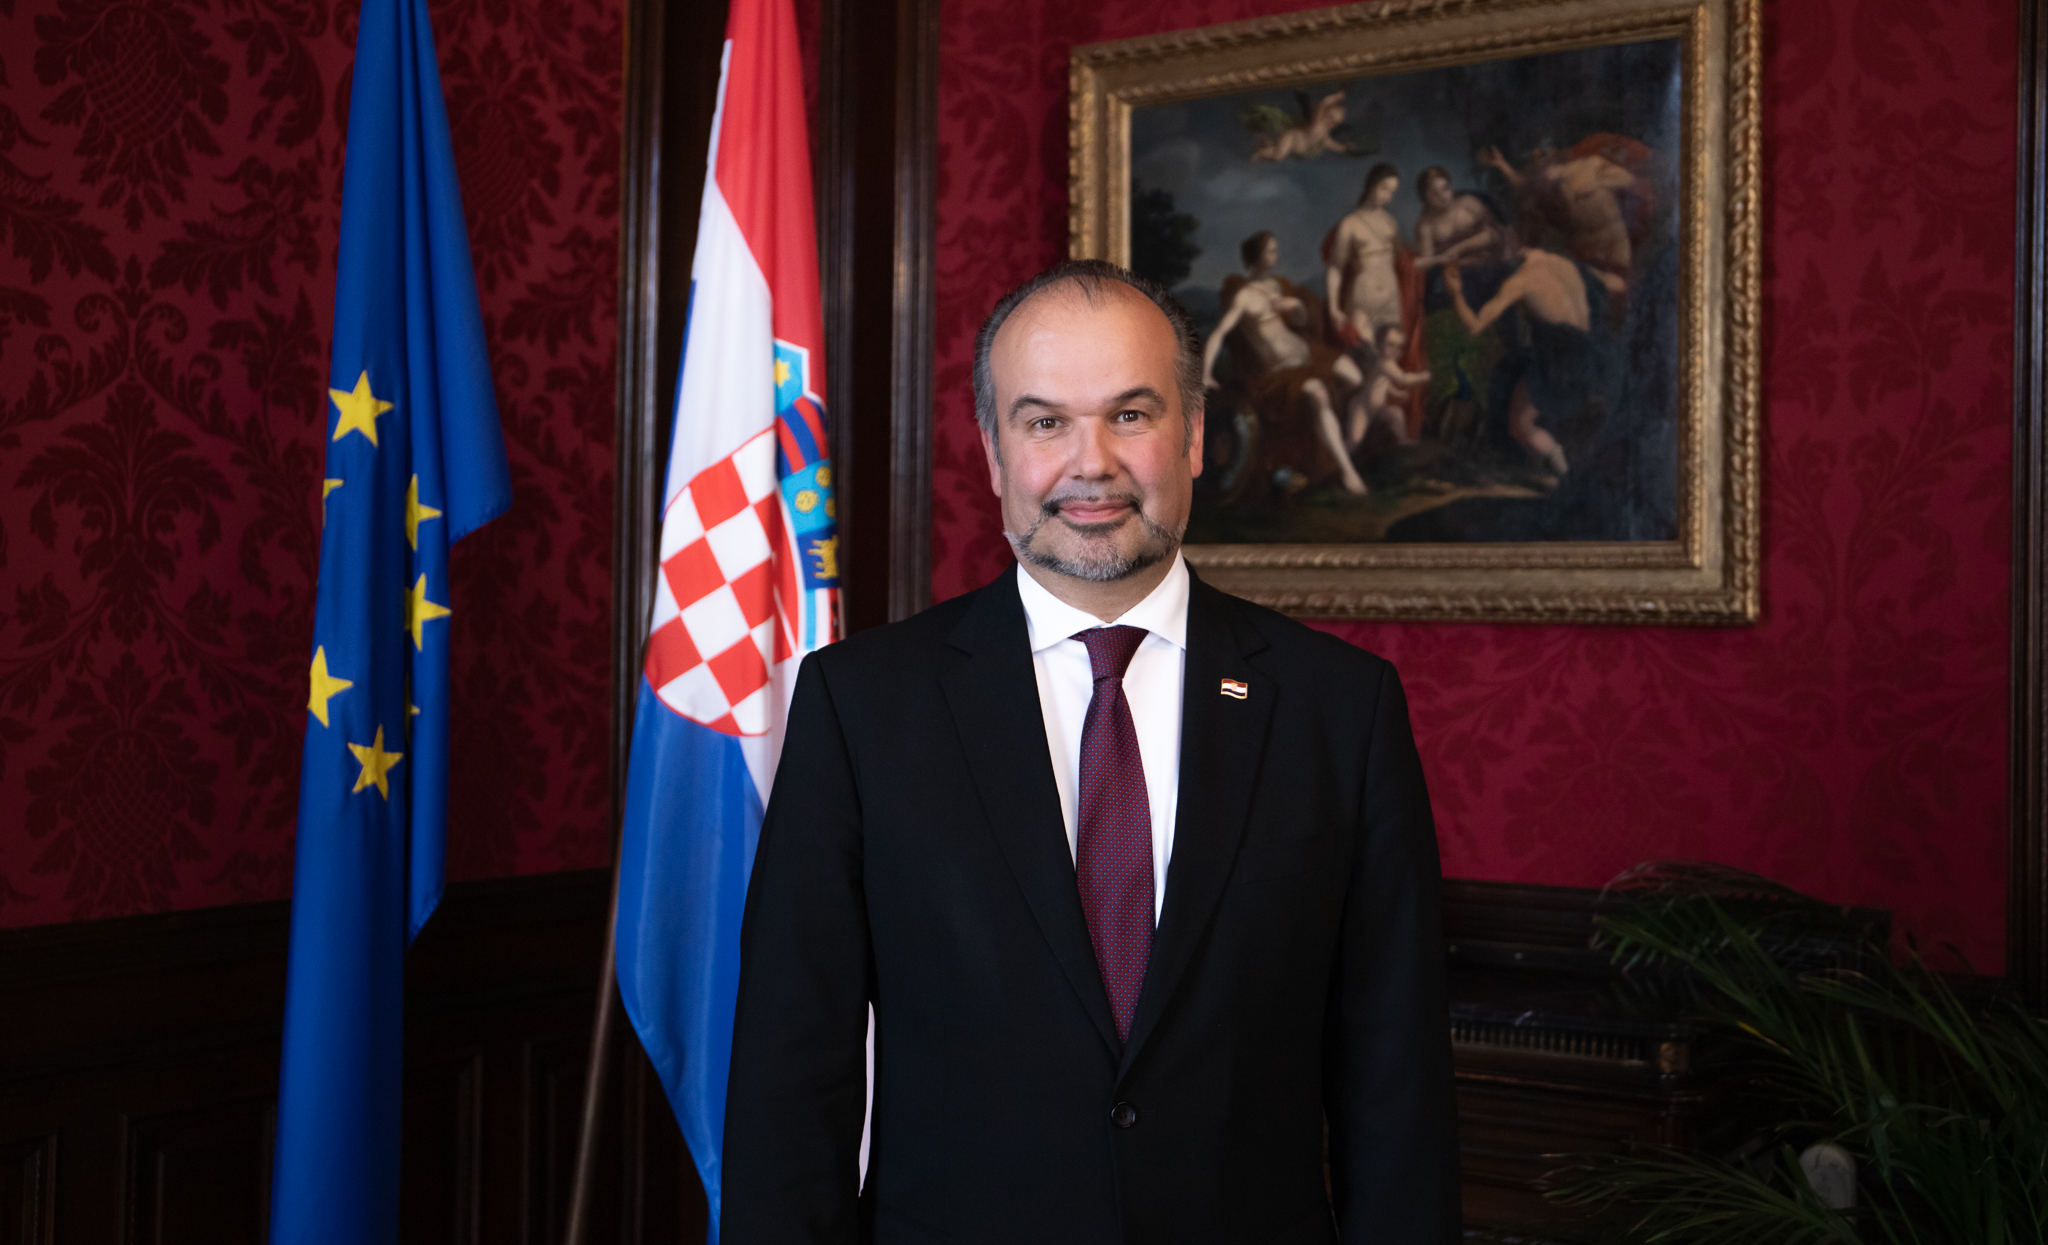 Dan državnosti  2021 – čestitka veleposlanika Daniela Glunčića